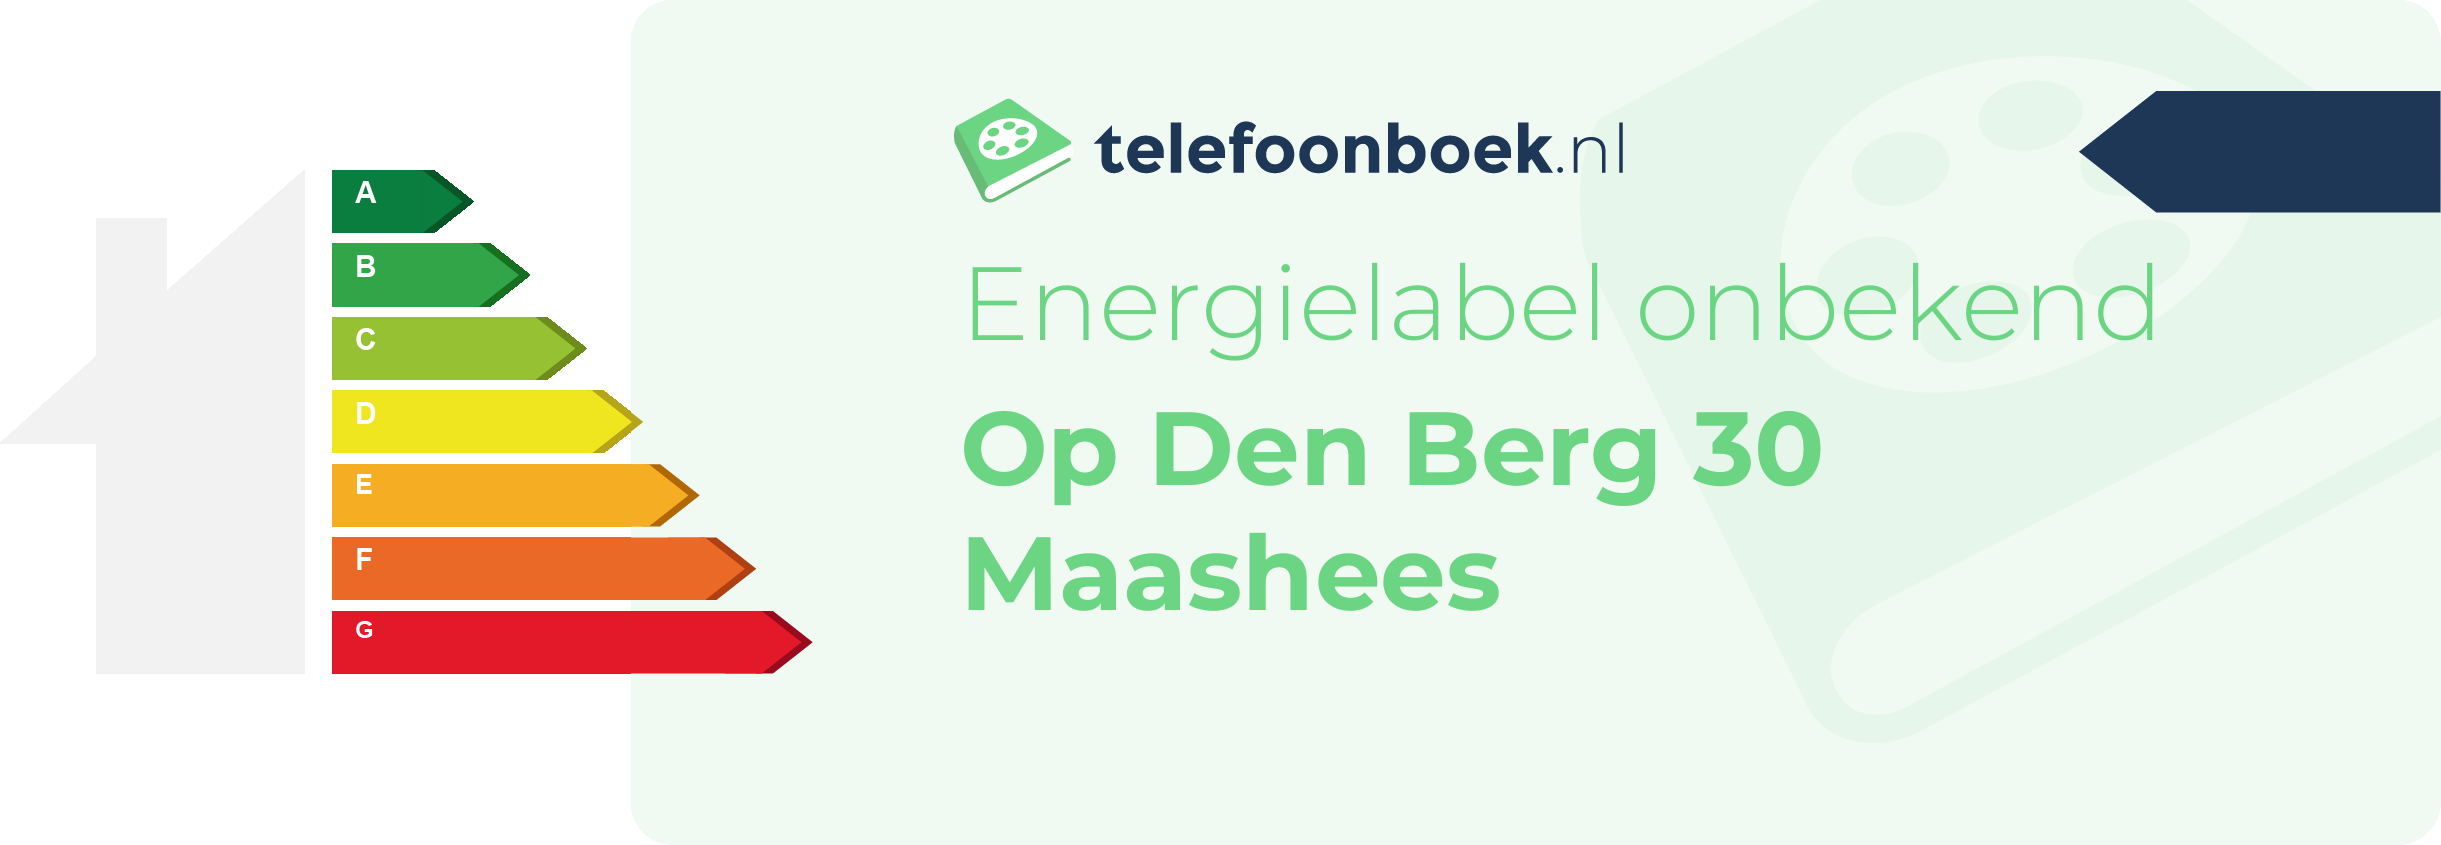 Energielabel Op Den Berg 30 Maashees